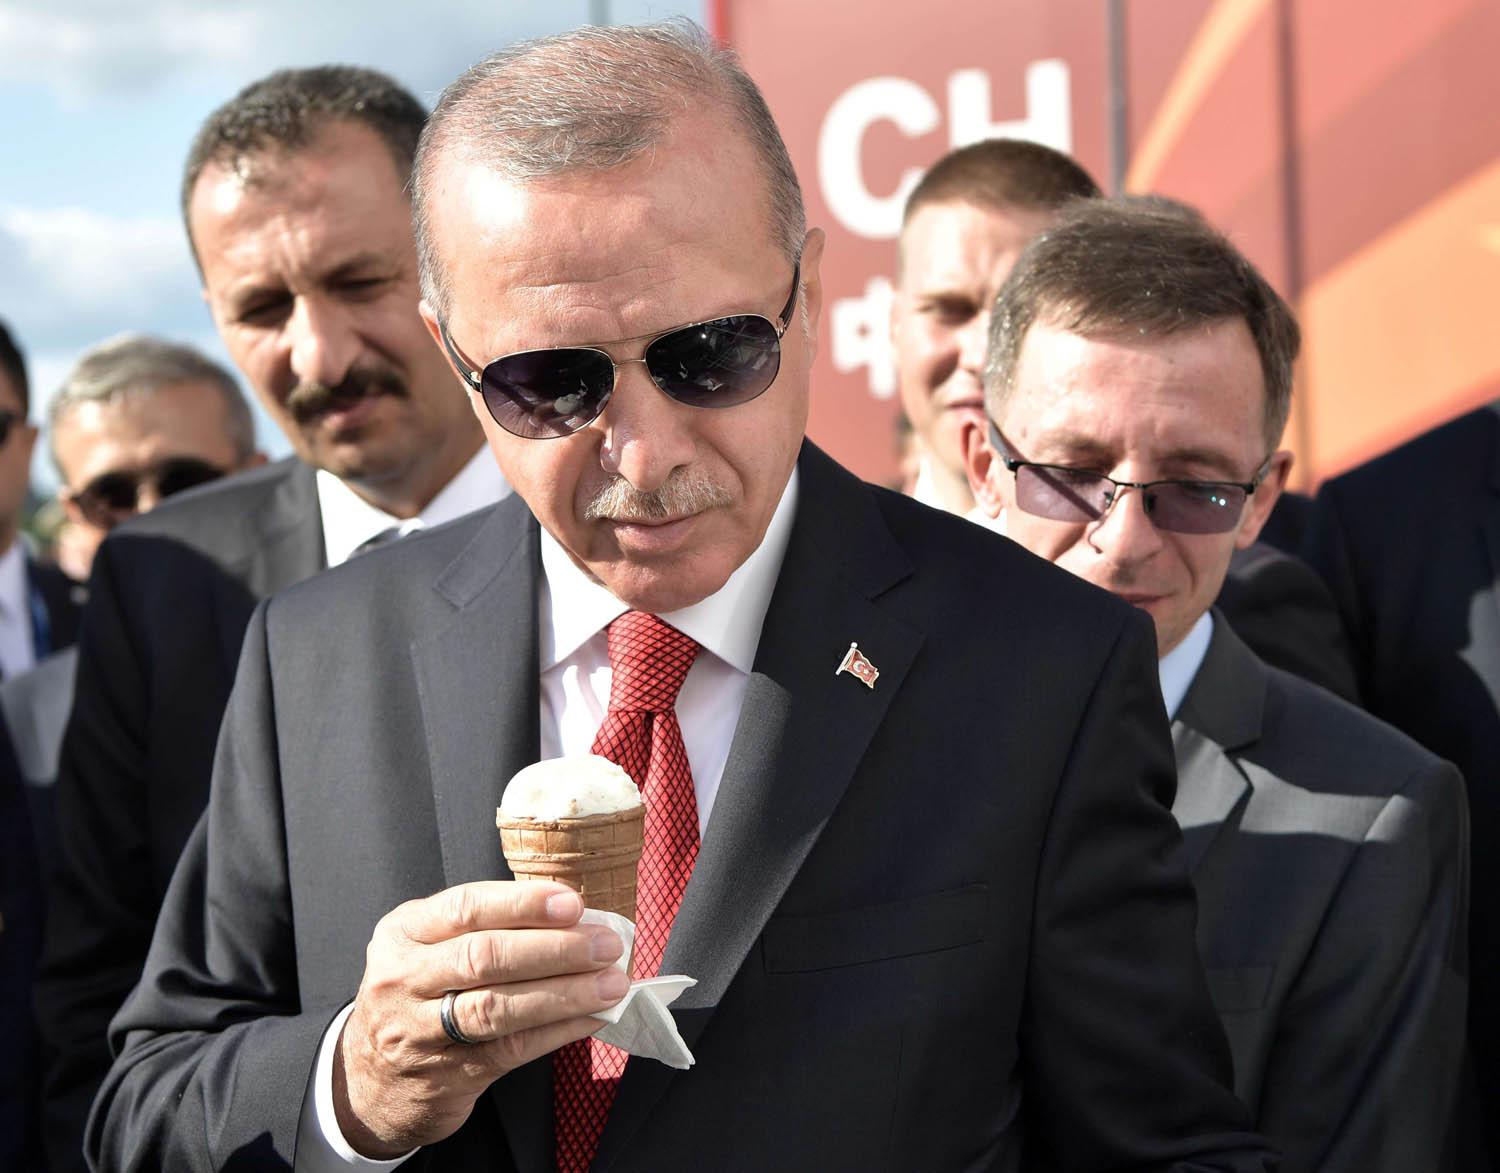 الرئيس التركي رجب طيب أردوغان يحضر معرضا عسكريا روسيا